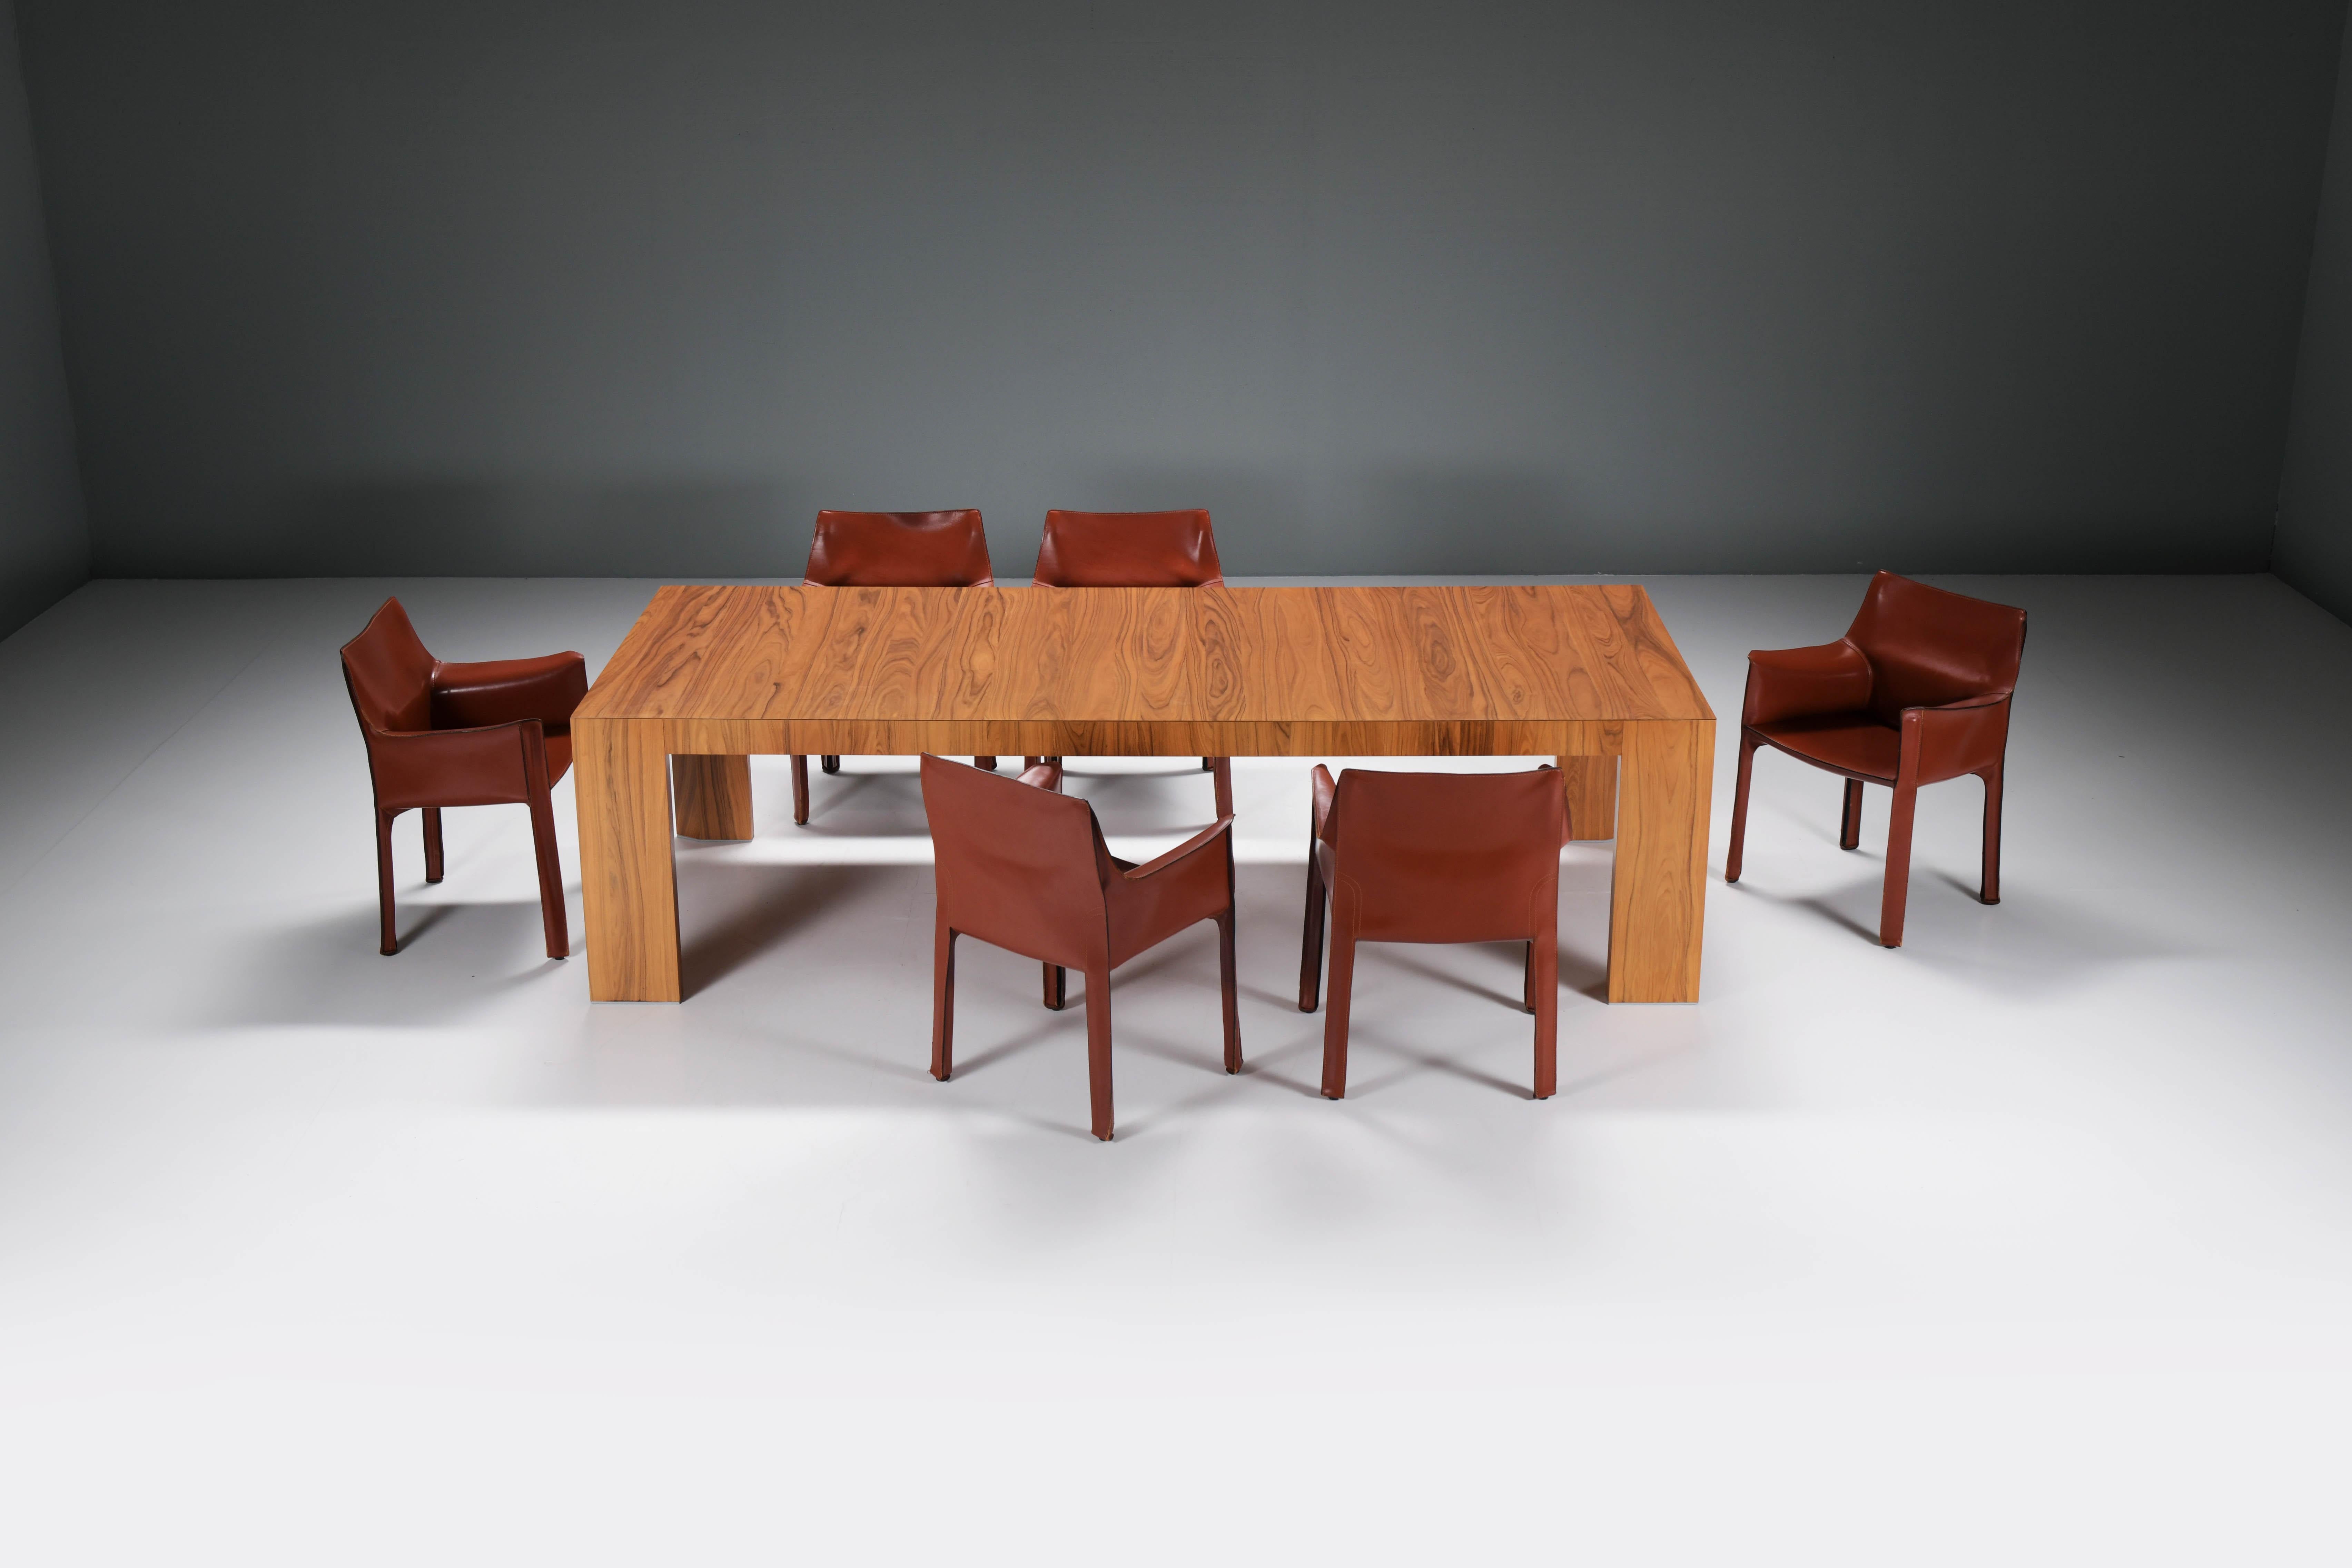 Magnifique ensemble de salle à manger Cassina. La combinaison parfaite : la table de salle à manger El Dom xl (270cm) en palissandre de Santos associée à un ensemble vintage de fauteuils en cuir CAB 413 rouge bordeaux.
La table EL DOM a été conçue